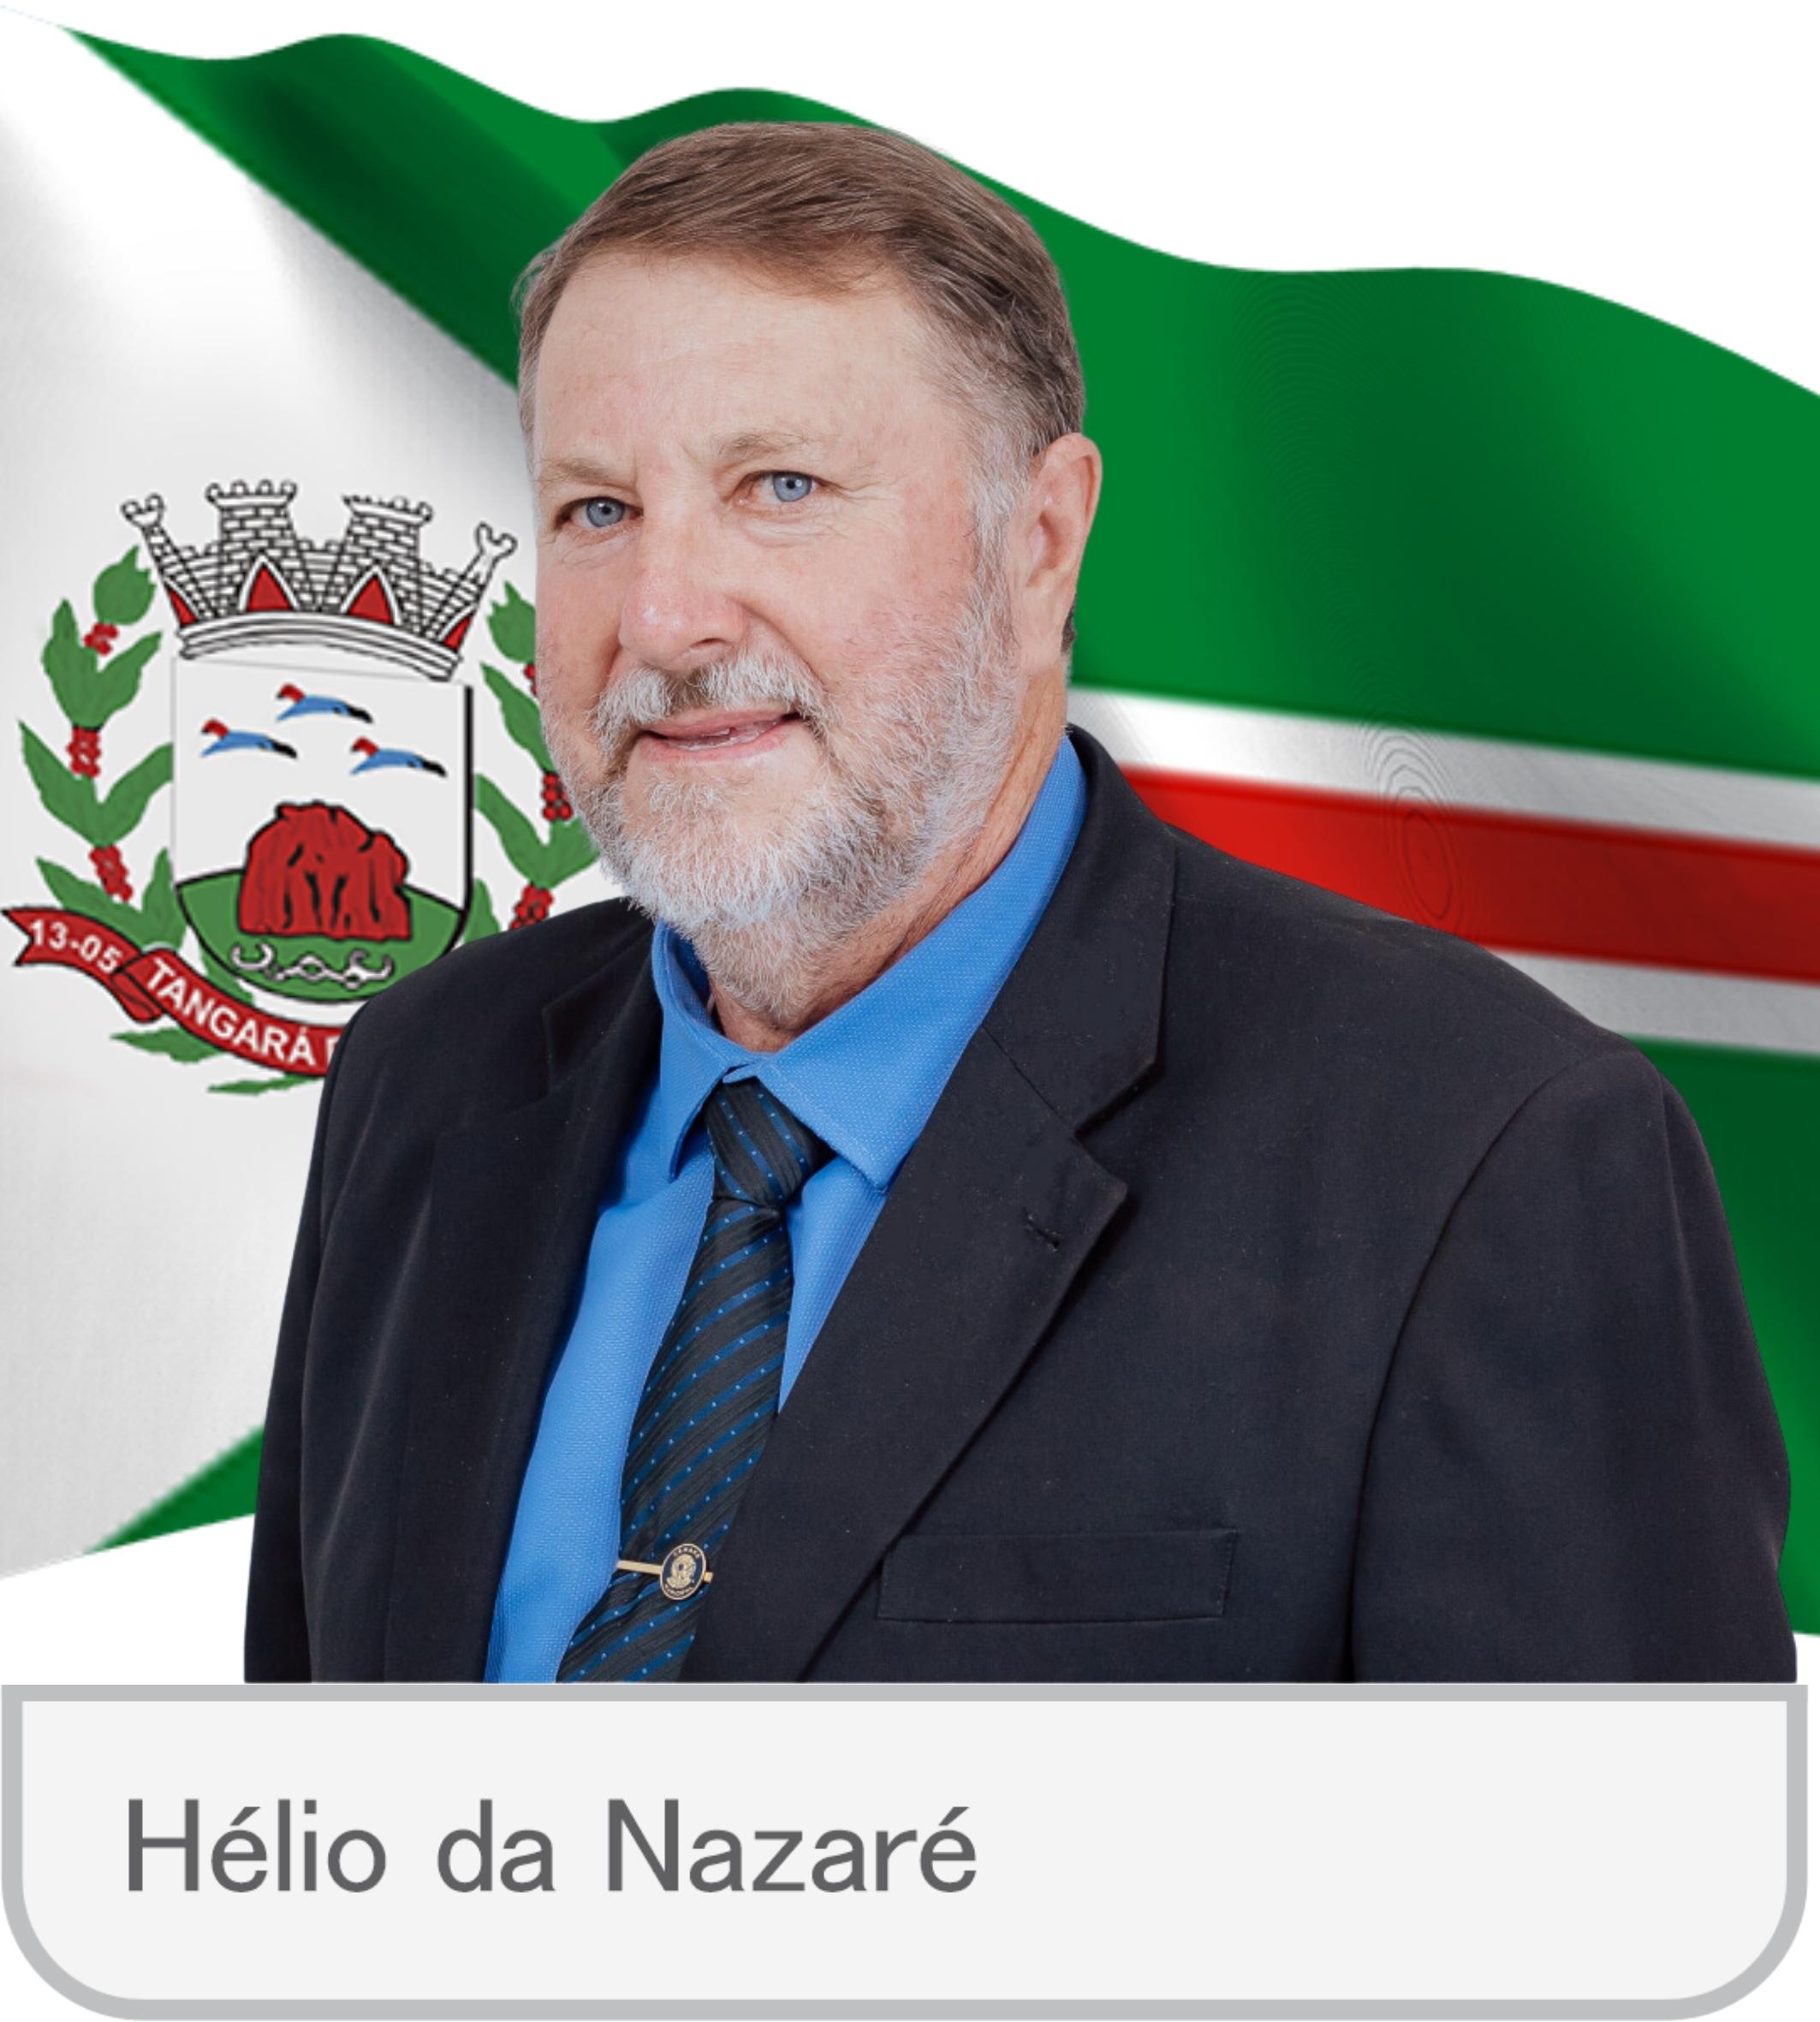 Hélio da Nazaré - oficial.jpg